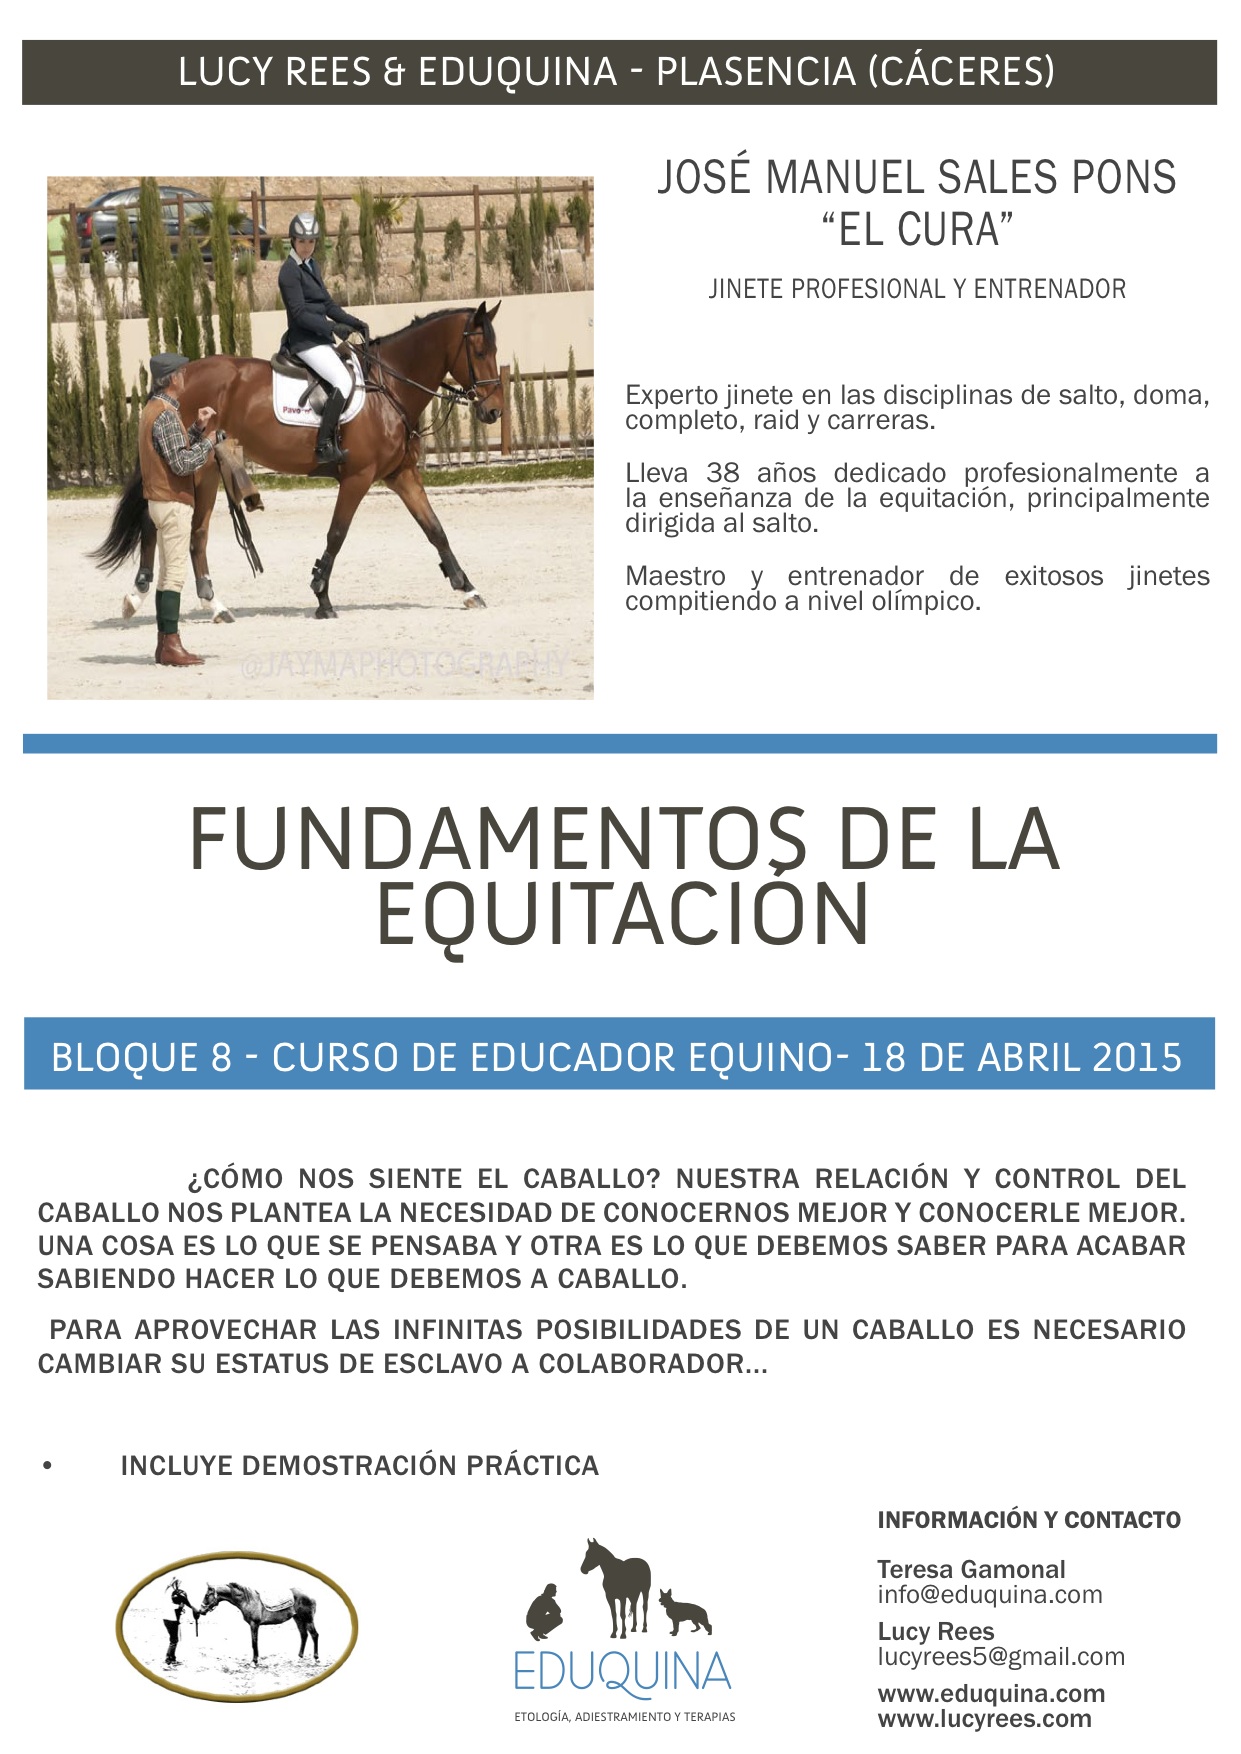 Curso: Fundamentos de la Equitación. José Manuel Sales Pons “el cura”.